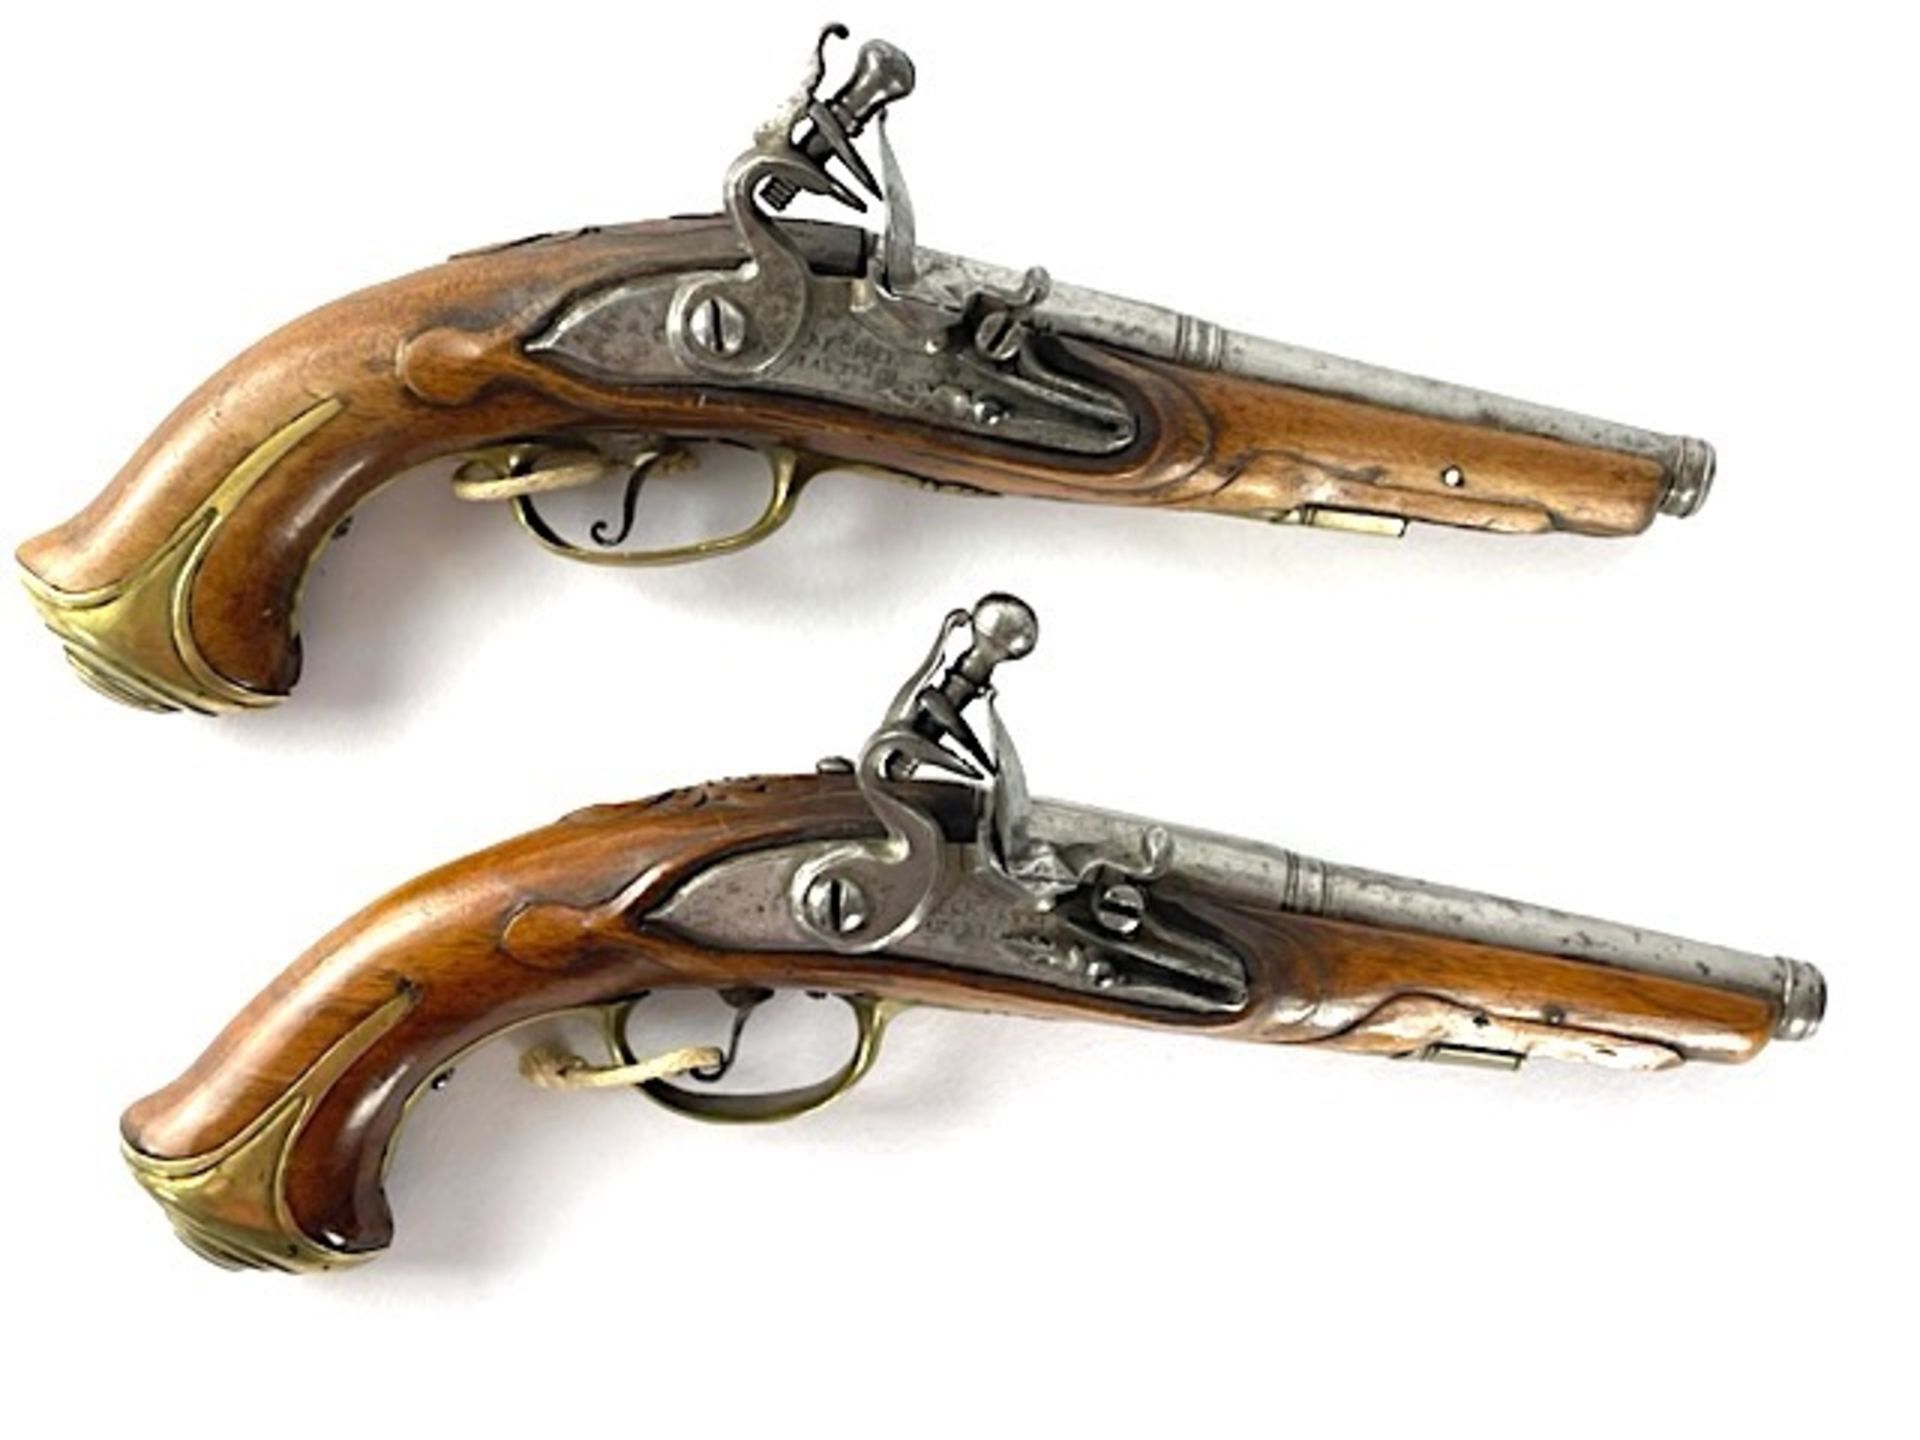 2 pistols